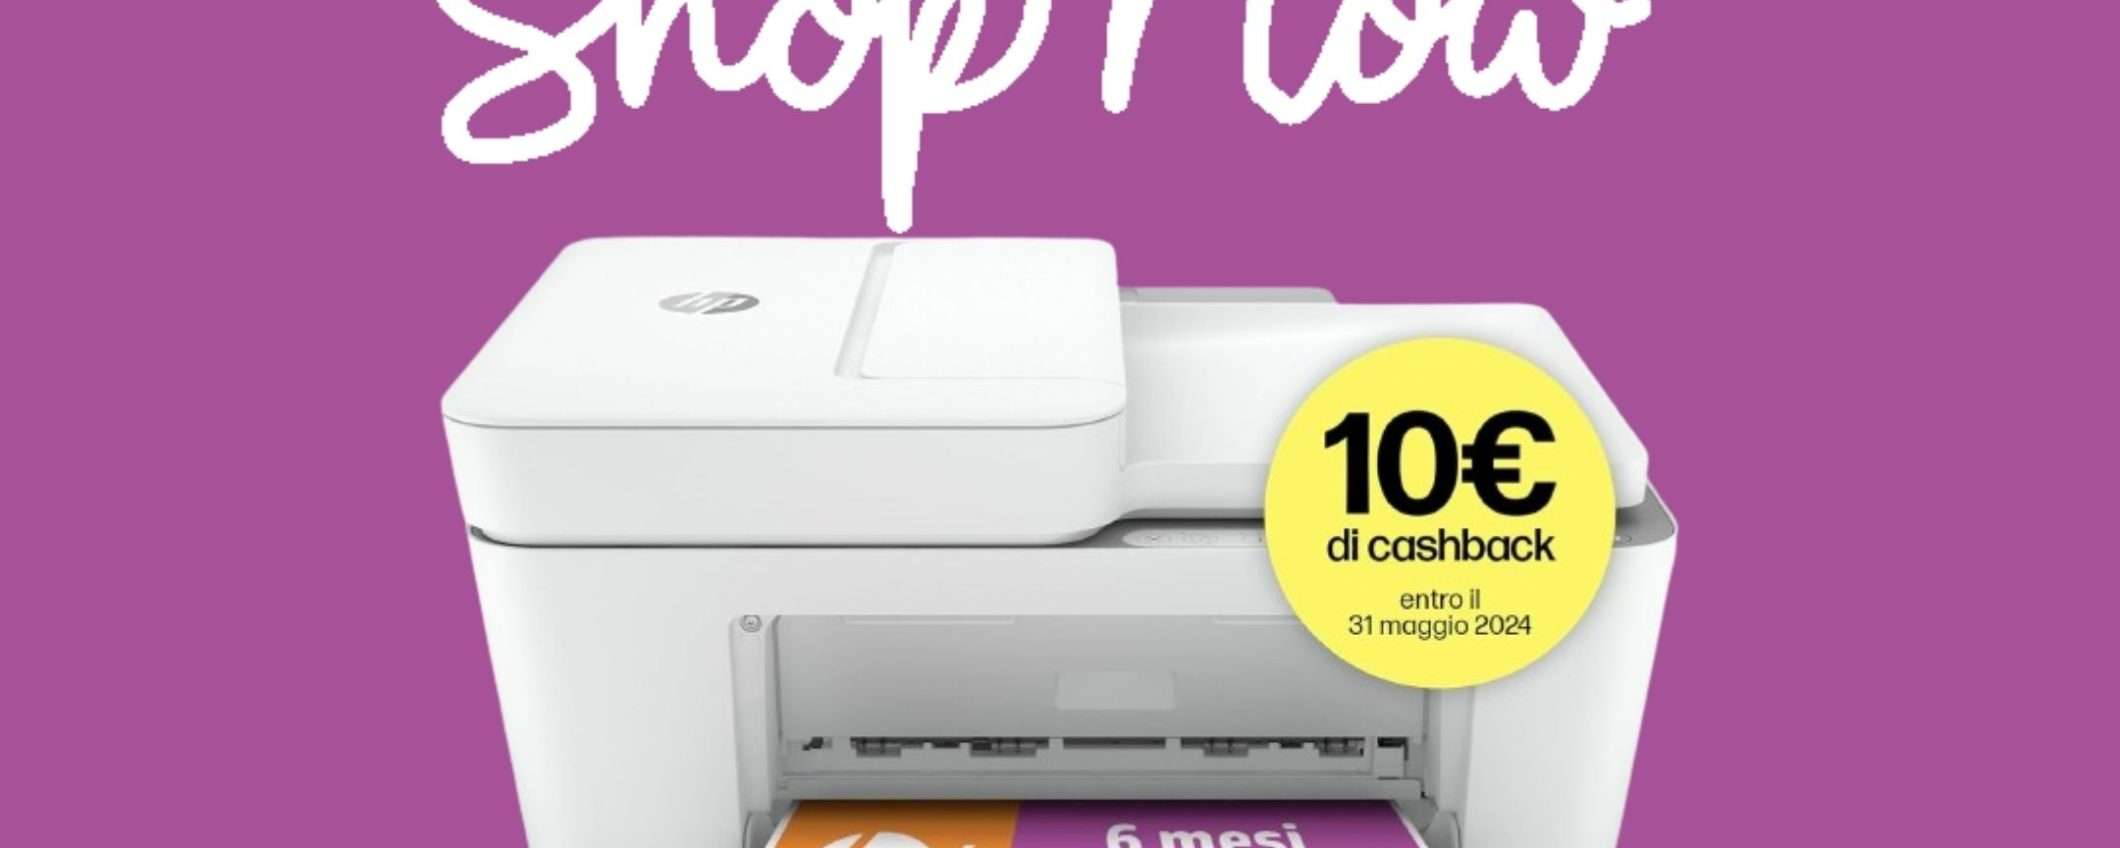 Stampante HP DeskJet 4120e: prezzo ASSURDO su Amazon e cashback di 10€